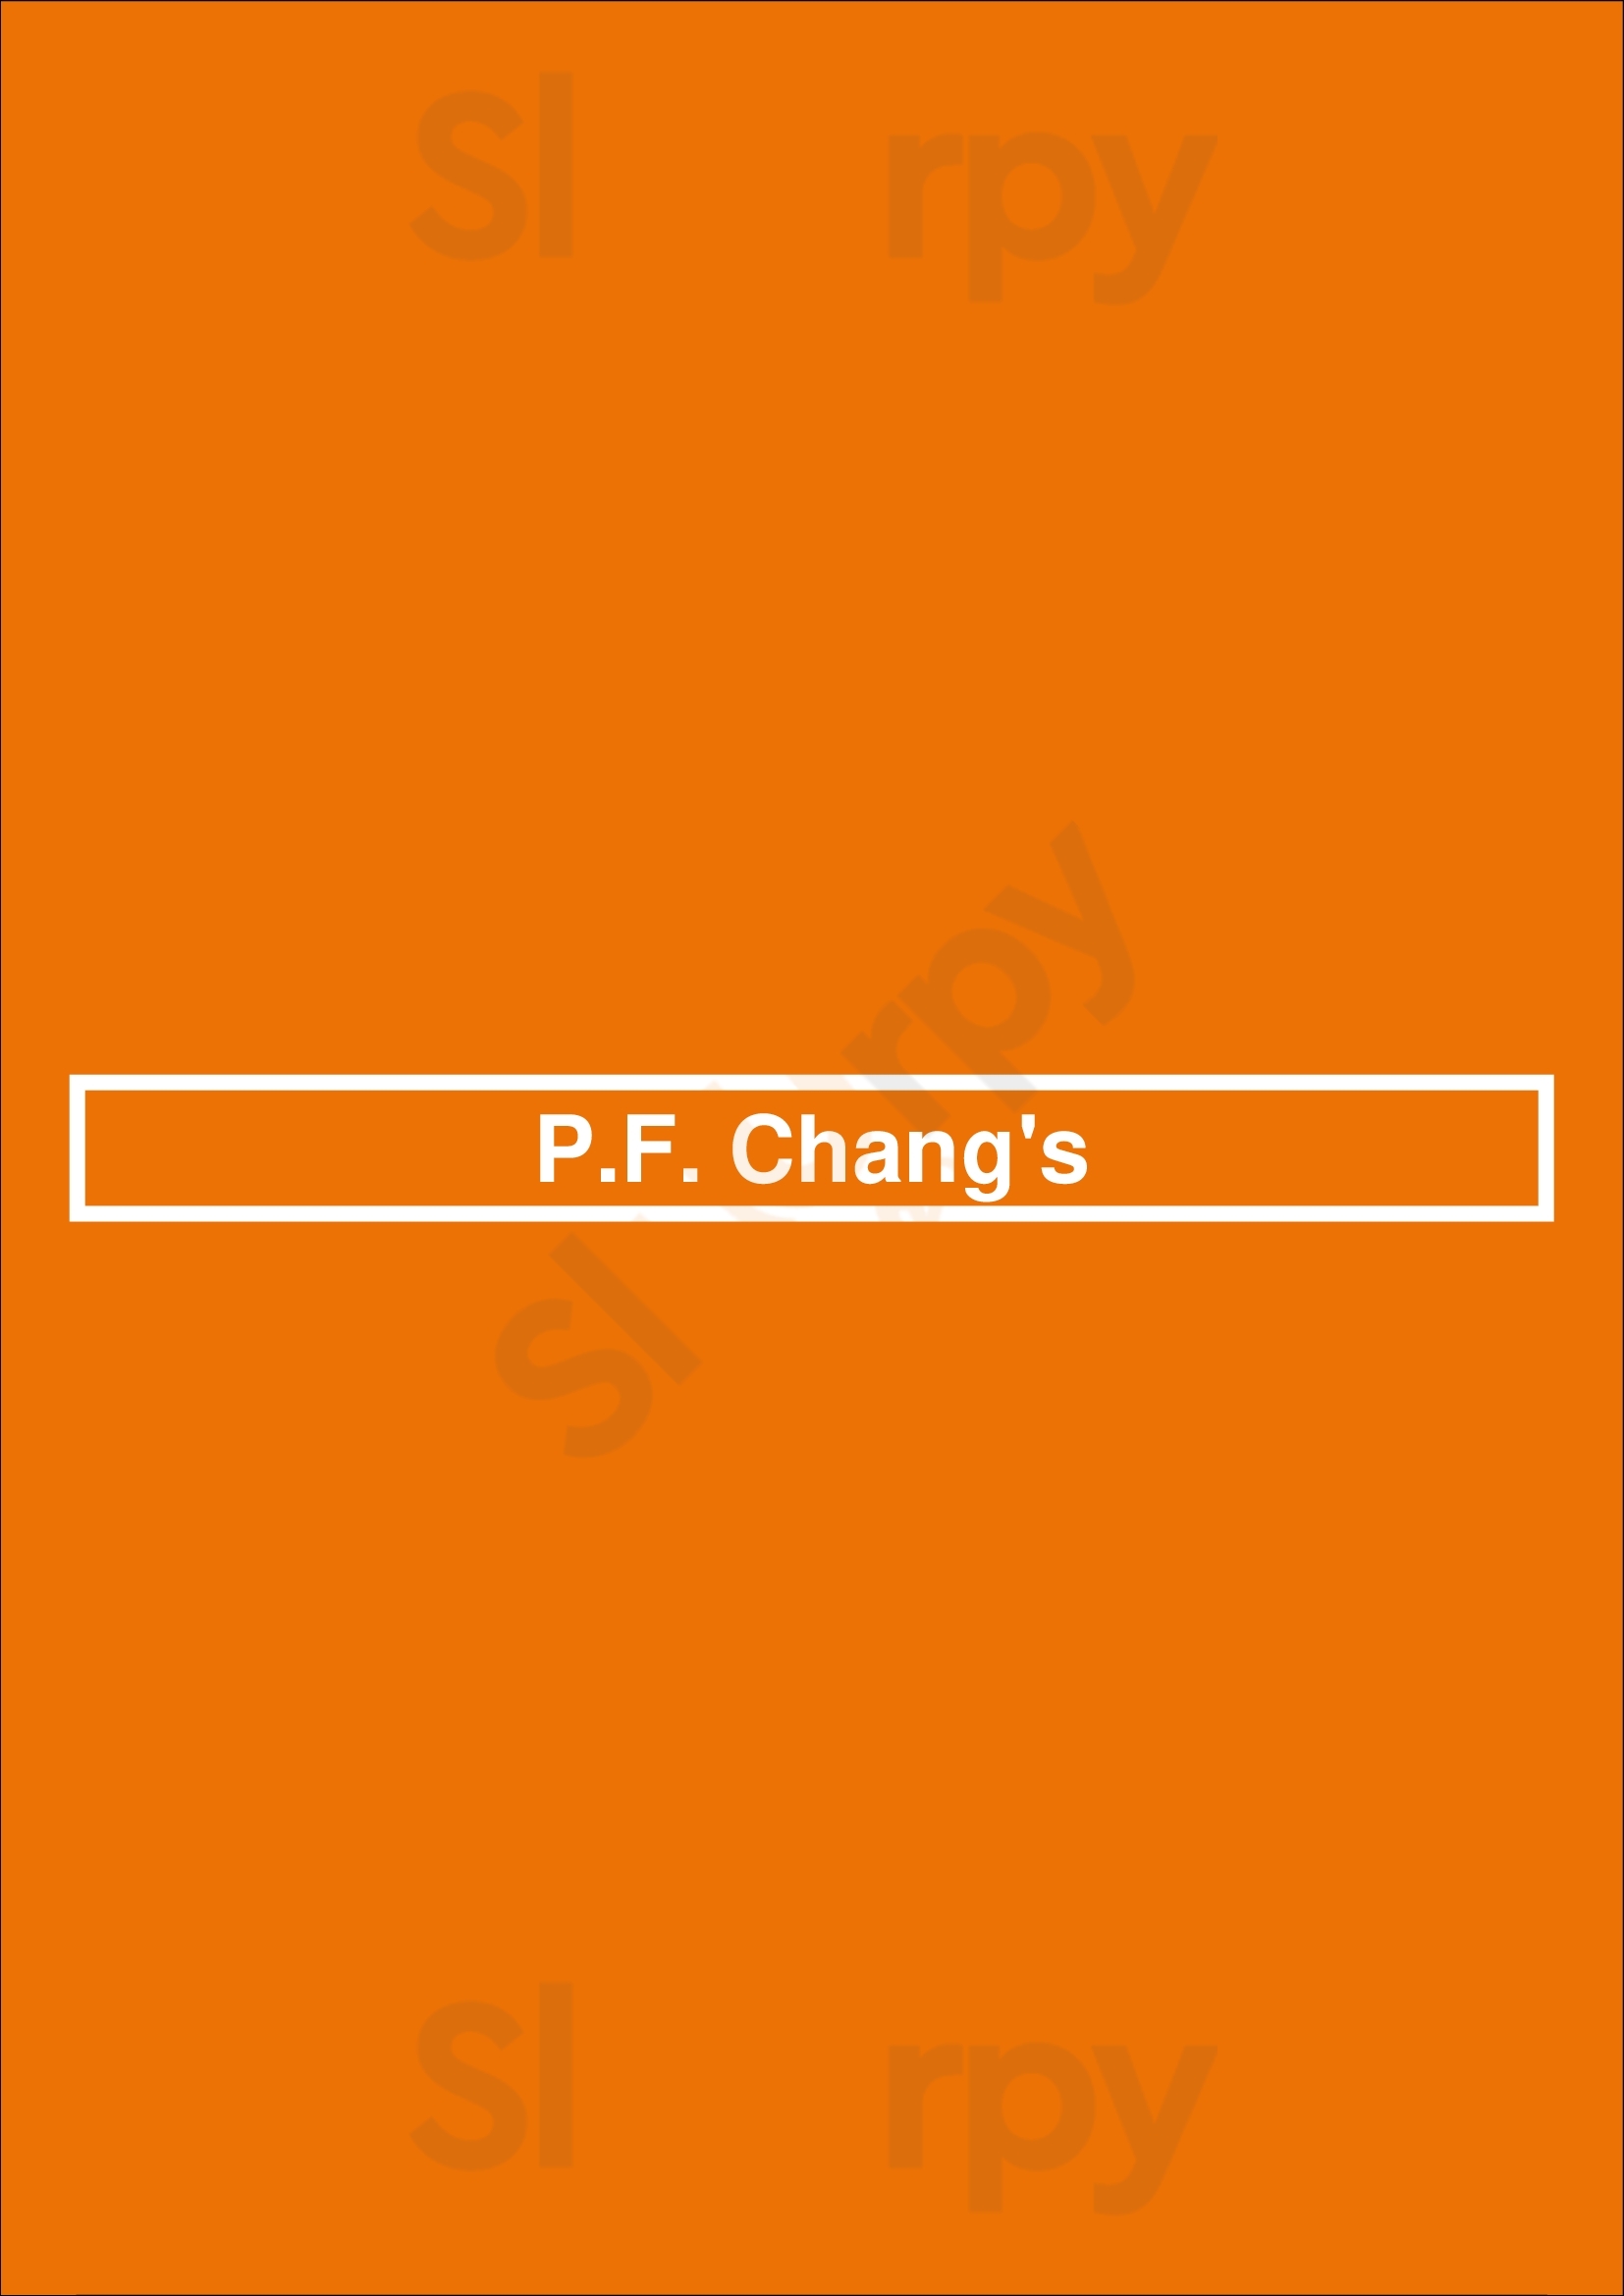 P.f. Chang's Fort Lauderdale Menu - 1